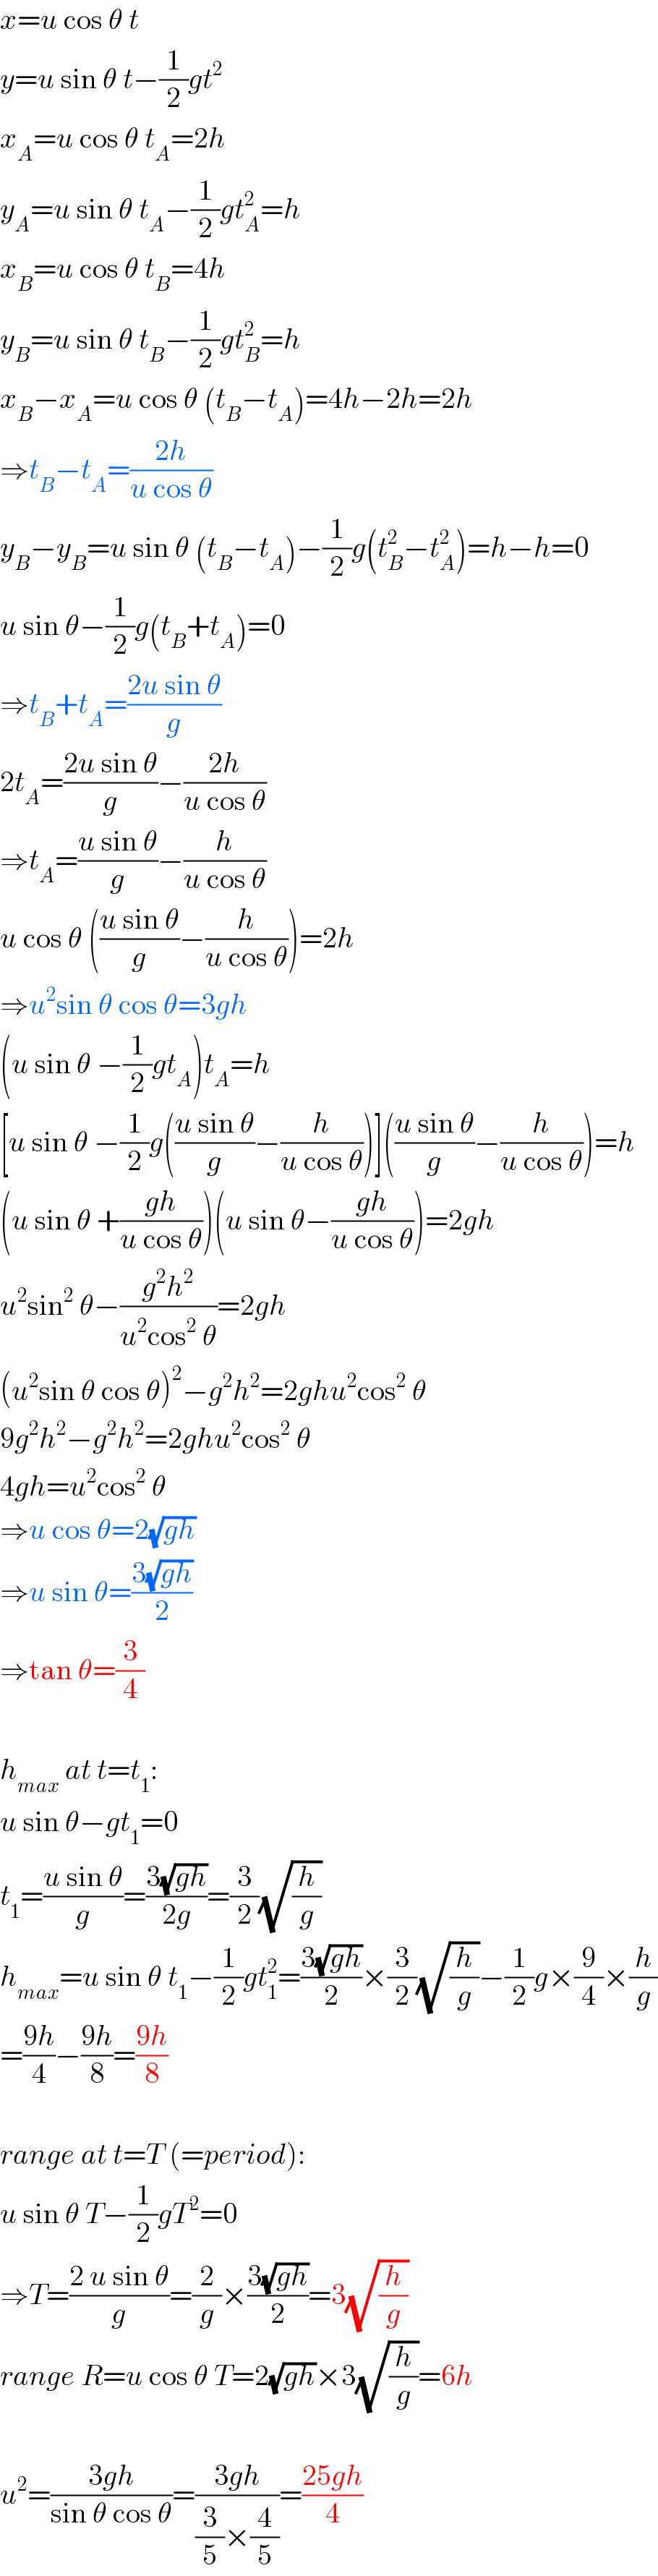 x=u cos θ t  y=u sin θ t−(1/2)gt^2   x_A =u cos θ t_A =2h  y_A =u sin θ t_A −(1/2)gt_A ^2 =h  x_B =u cos θ t_B =4h  y_B =u sin θ t_B −(1/2)gt_B ^2 =h  x_B −x_A =u cos θ (t_B −t_A )=4h−2h=2h  ⇒t_B −t_A =((2h)/(u cos θ))  y_B −y_B =u sin θ (t_B −t_A )−(1/2)g(t_B ^2 −t_A ^2 )=h−h=0  u sin θ−(1/2)g(t_B +t_A )=0  ⇒t_B +t_A =((2u sin θ)/g)  2t_A =((2u sin θ)/g)−((2h)/(u cos θ))  ⇒t_A =((u sin θ)/g)−(h/(u cos θ))  u cos θ (((u sin θ)/g)−(h/(u cos θ)))=2h  ⇒u^2 sin θ cos θ=3gh  (u sin θ −(1/2)gt_A )t_A =h  [u sin θ −(1/2)g(((u sin θ)/g)−(h/(u cos θ)))](((u sin θ)/g)−(h/(u cos θ)))=h  (u sin θ +((gh)/(u cos θ)))(u sin θ−((gh)/(u cos θ)))=2gh  u^2 sin^2  θ−((g^2 h^2 )/(u^2 cos^2  θ))=2gh  (u^2 sin θ cos θ)^2 −g^2 h^2 =2ghu^2 cos^2  θ  9g^2 h^2 −g^2 h^2 =2ghu^2 cos^2  θ  4gh=u^2 cos^2  θ  ⇒u cos θ=2(√(gh))  ⇒u sin θ=((3(√(gh)))/2)  ⇒tan θ=(3/4)    h_(max)  at t=t_1 :  u sin θ−gt_1 =0  t_1 =((u sin θ)/g)=((3(√(gh)))/(2g))=(3/2)(√(h/g))  h_(max) =u sin θ t_1 −(1/2)gt_1 ^2 =((3(√(gh)))/2)×(3/2)(√(h/g))−(1/2)g×(9/4)×(h/g)  =((9h)/4)−((9h)/8)=((9h)/8)    range at t=T (=period):  u sin θ T−(1/2)gT^2 =0  ⇒T=((2 u sin θ)/g)=(2/g)×((3(√(gh)))/2)=3(√(h/g))  range R=u cos θ T=2(√(gh))×3(√(h/g))=6h    u^2 =((3gh)/(sin θ cos θ))=((3gh)/((3/5)×(4/5)))=((25gh)/4)  